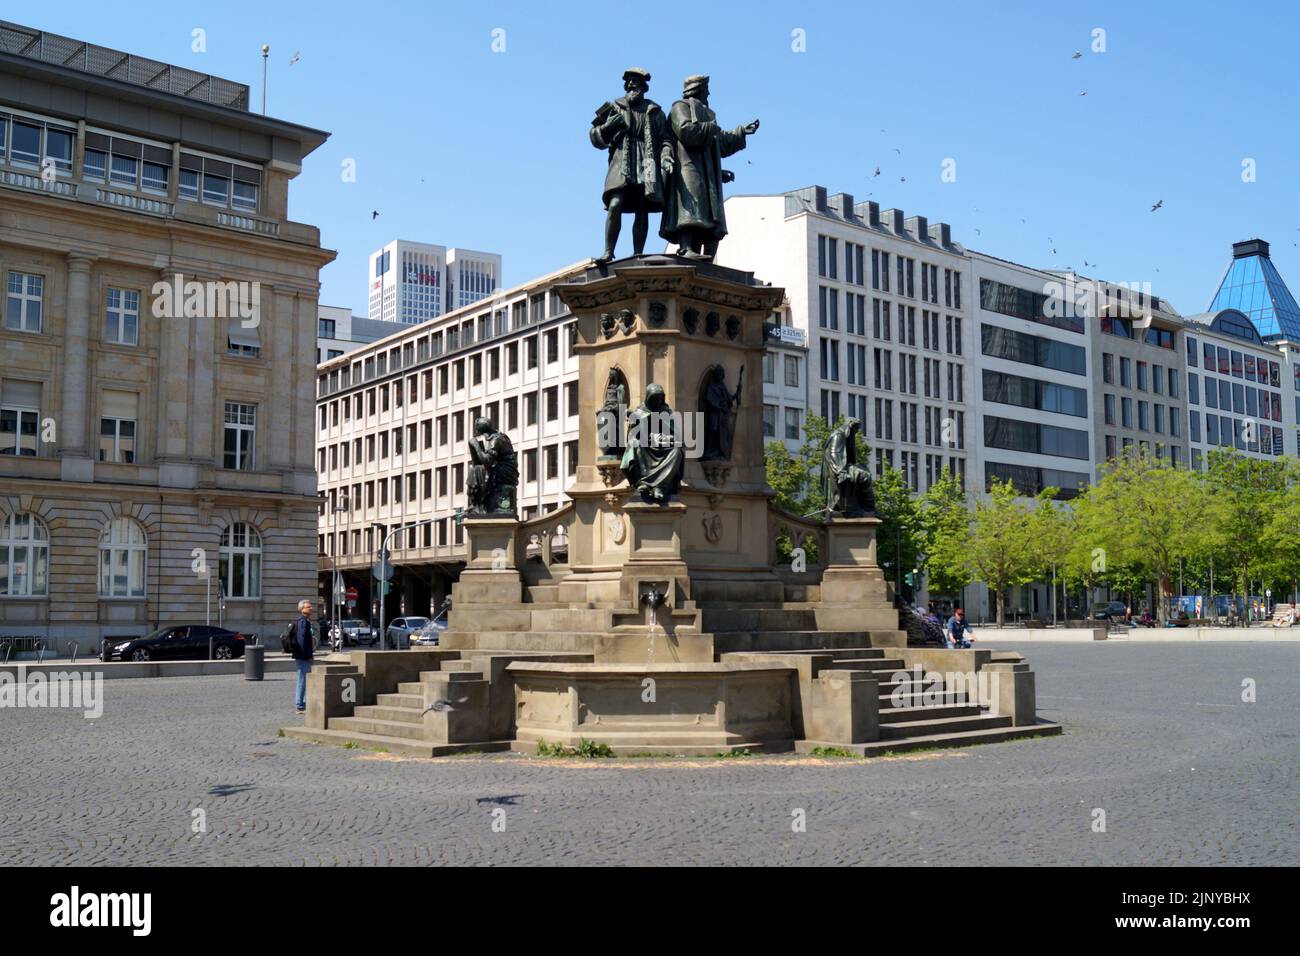 Johannes Gutenberg Monument, inaugurated in 1858, on the Rossmarkt, sculptural work by Eduard Schmidt von der Launitz, Frankfurt, Germany Stock Photo